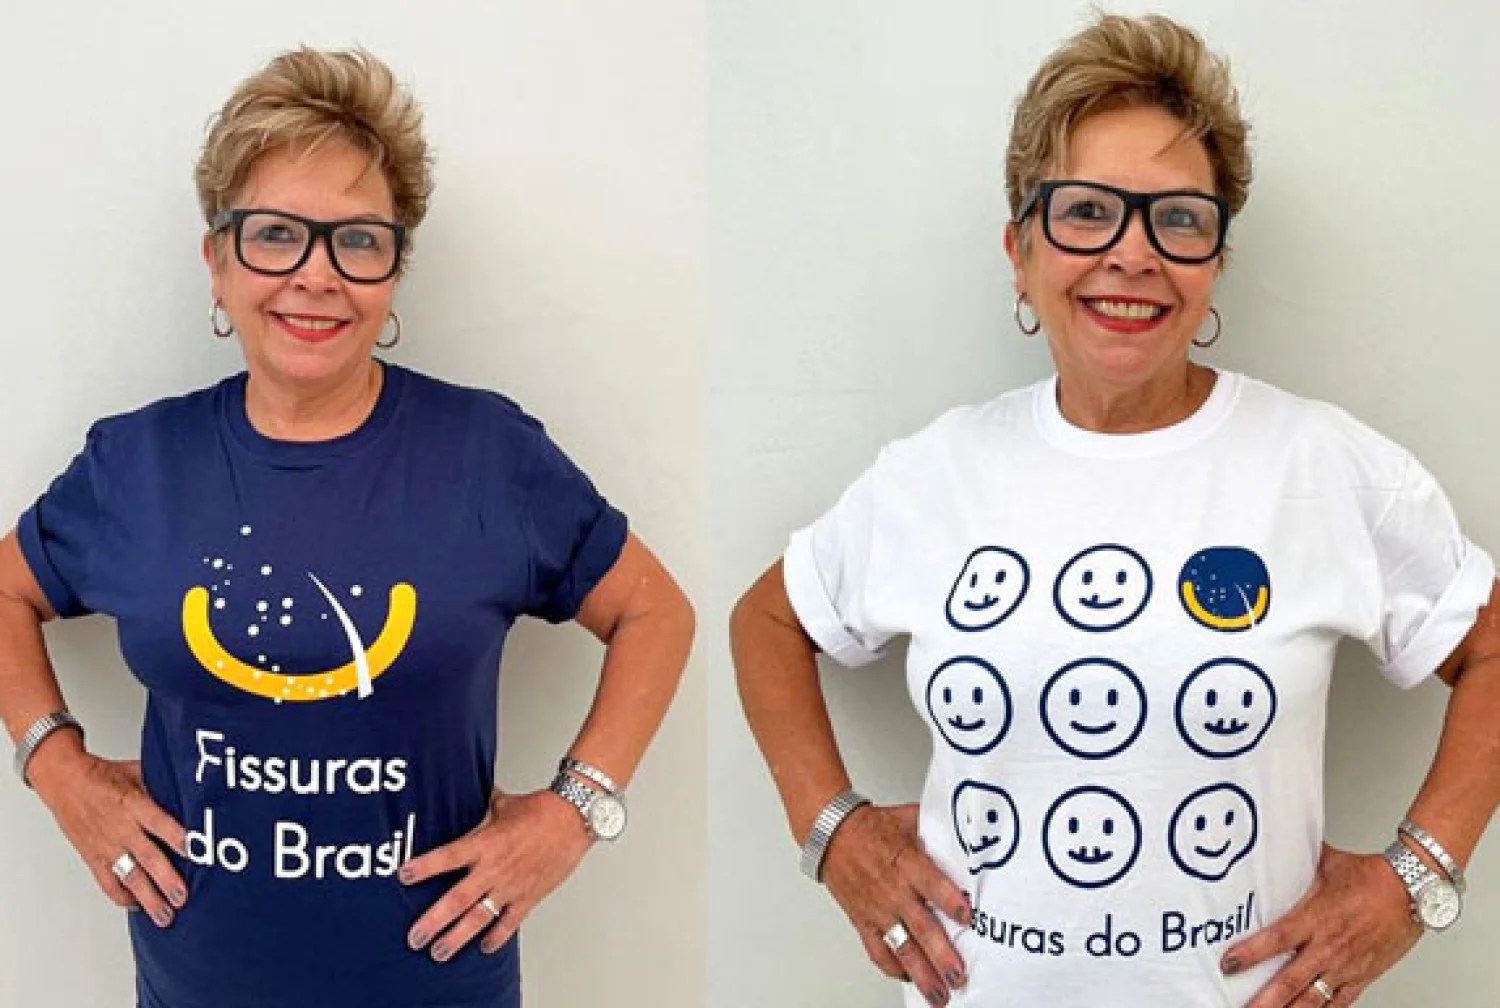 Solidariedade: Vista a camisa ‘Fissuras do Brasil’ e ajude a Rede Profis